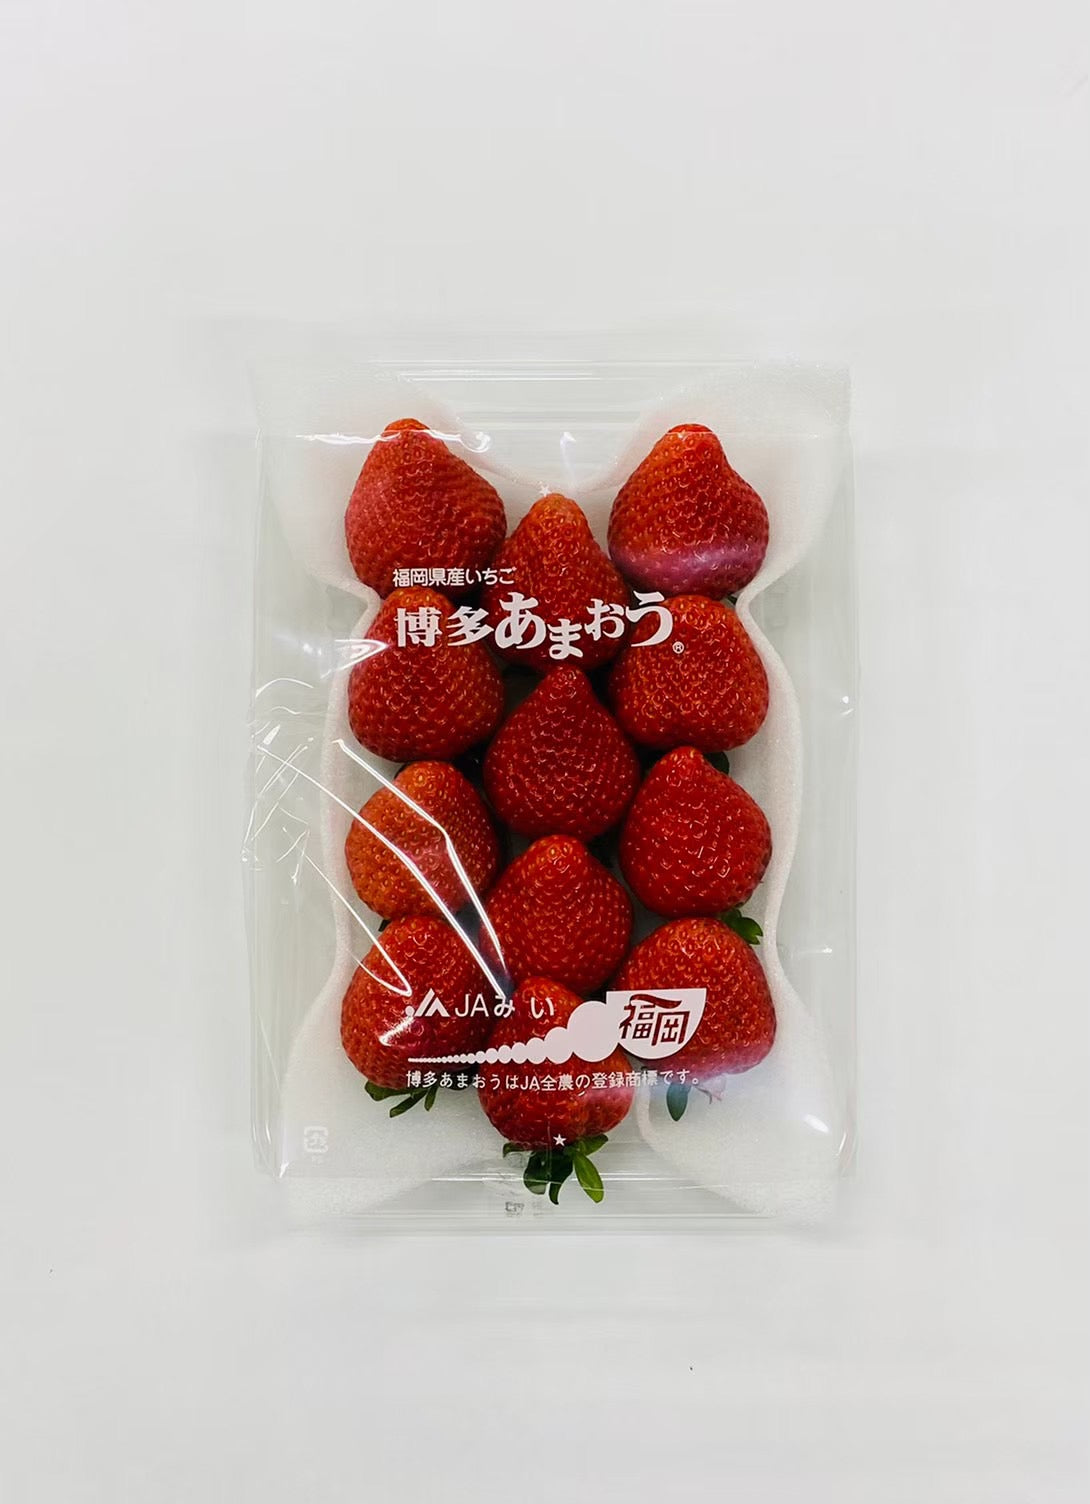 [Winter vegetables] Amaou 11-12 pieces 2 packs